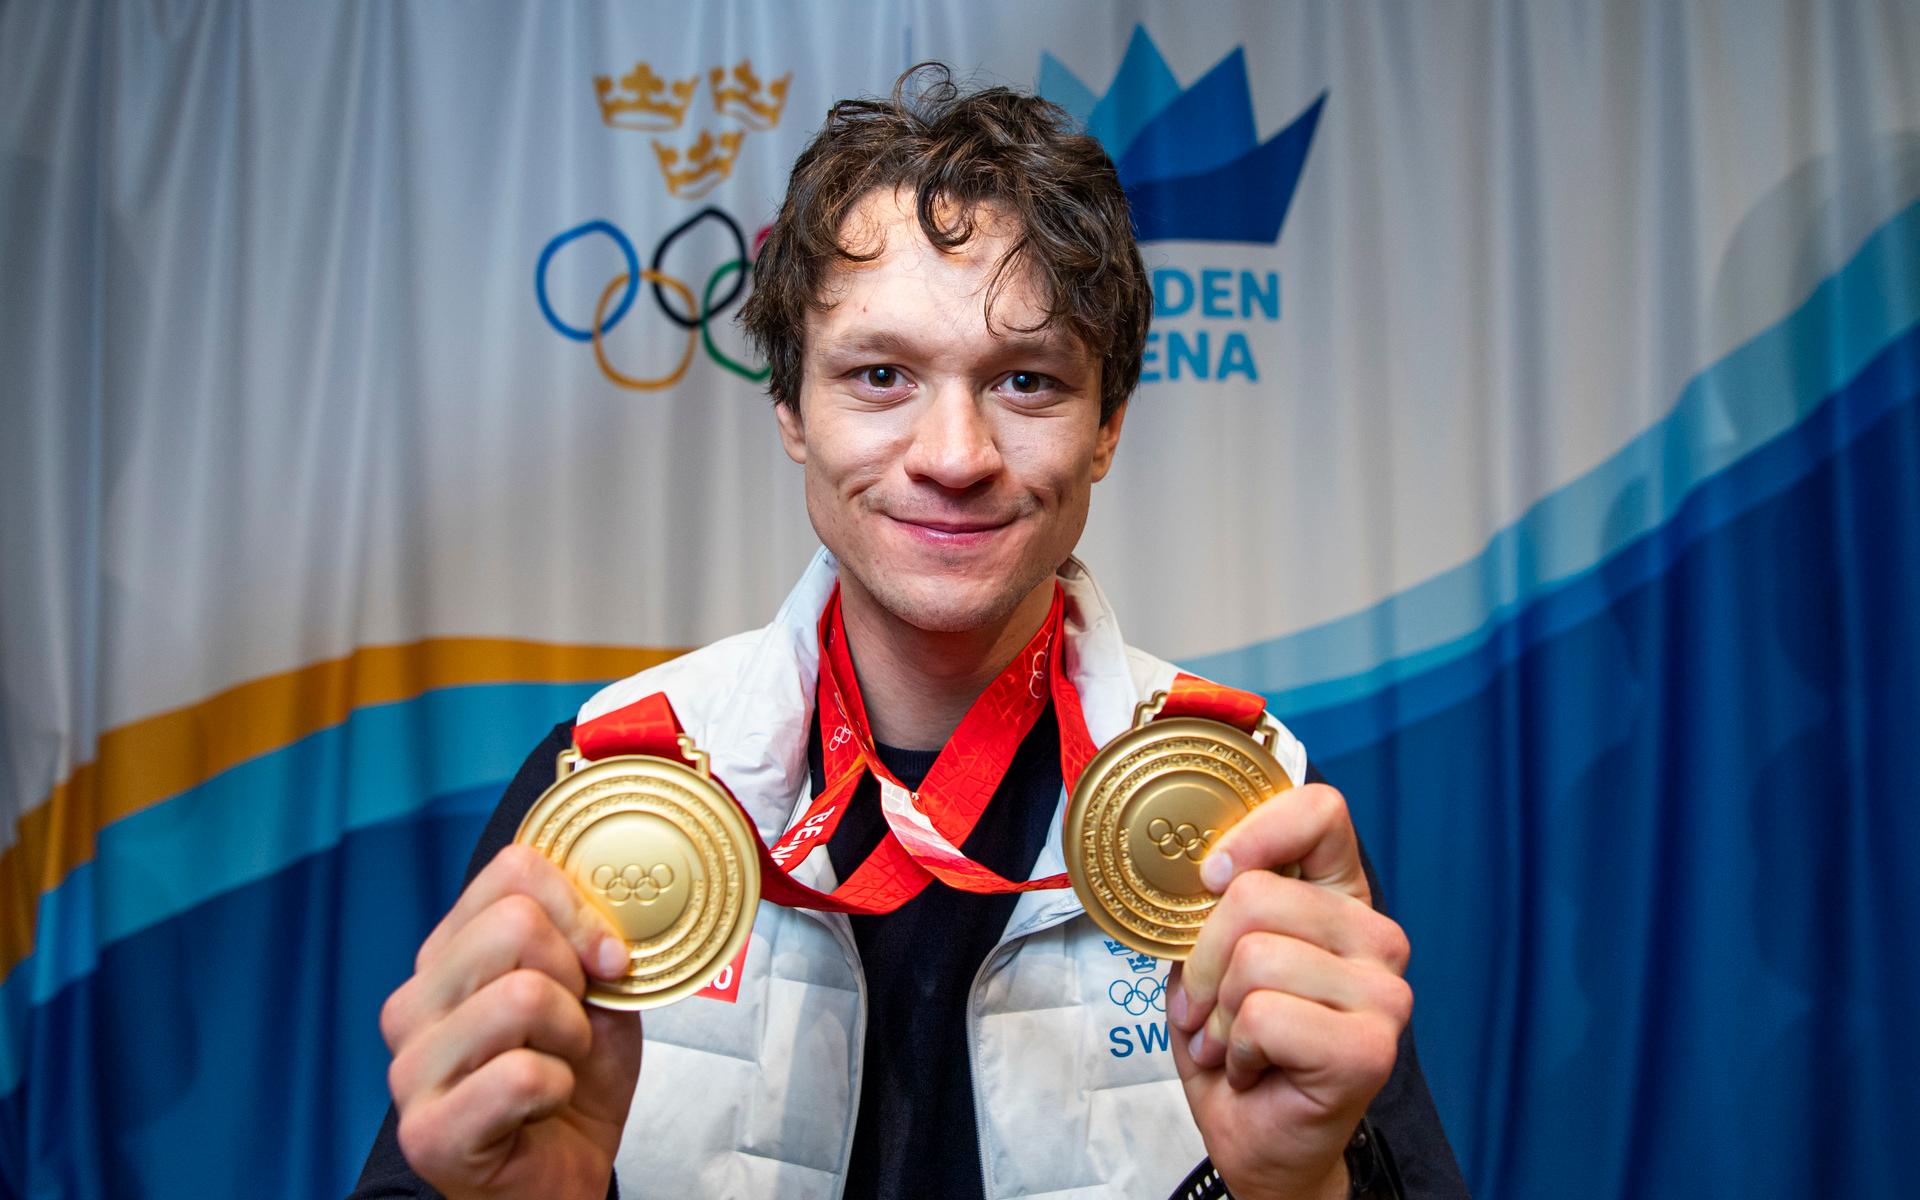 Nils van der Poel med sina dubbla OS-medaljer.